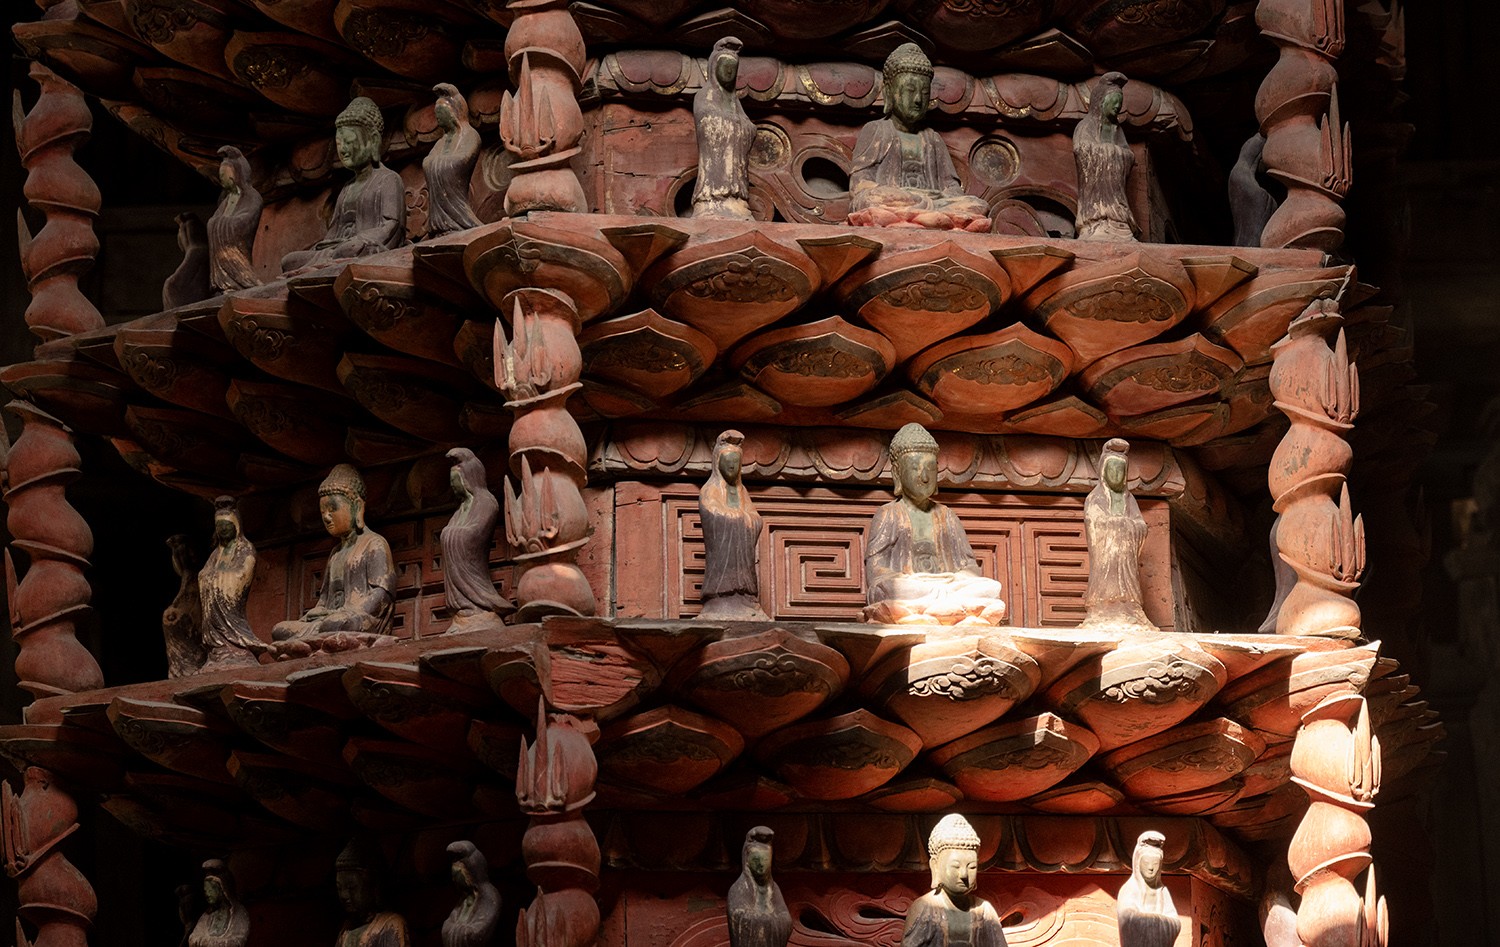 Trên Cửu phẩm có 145 pho tượng Phật. Toàn bộ kết cấu Cửu phẩm liên kết với một trụ gỗ lim lớn ở giữa, trụ này đặt trên ngõng đá, tựa một ổ bi.